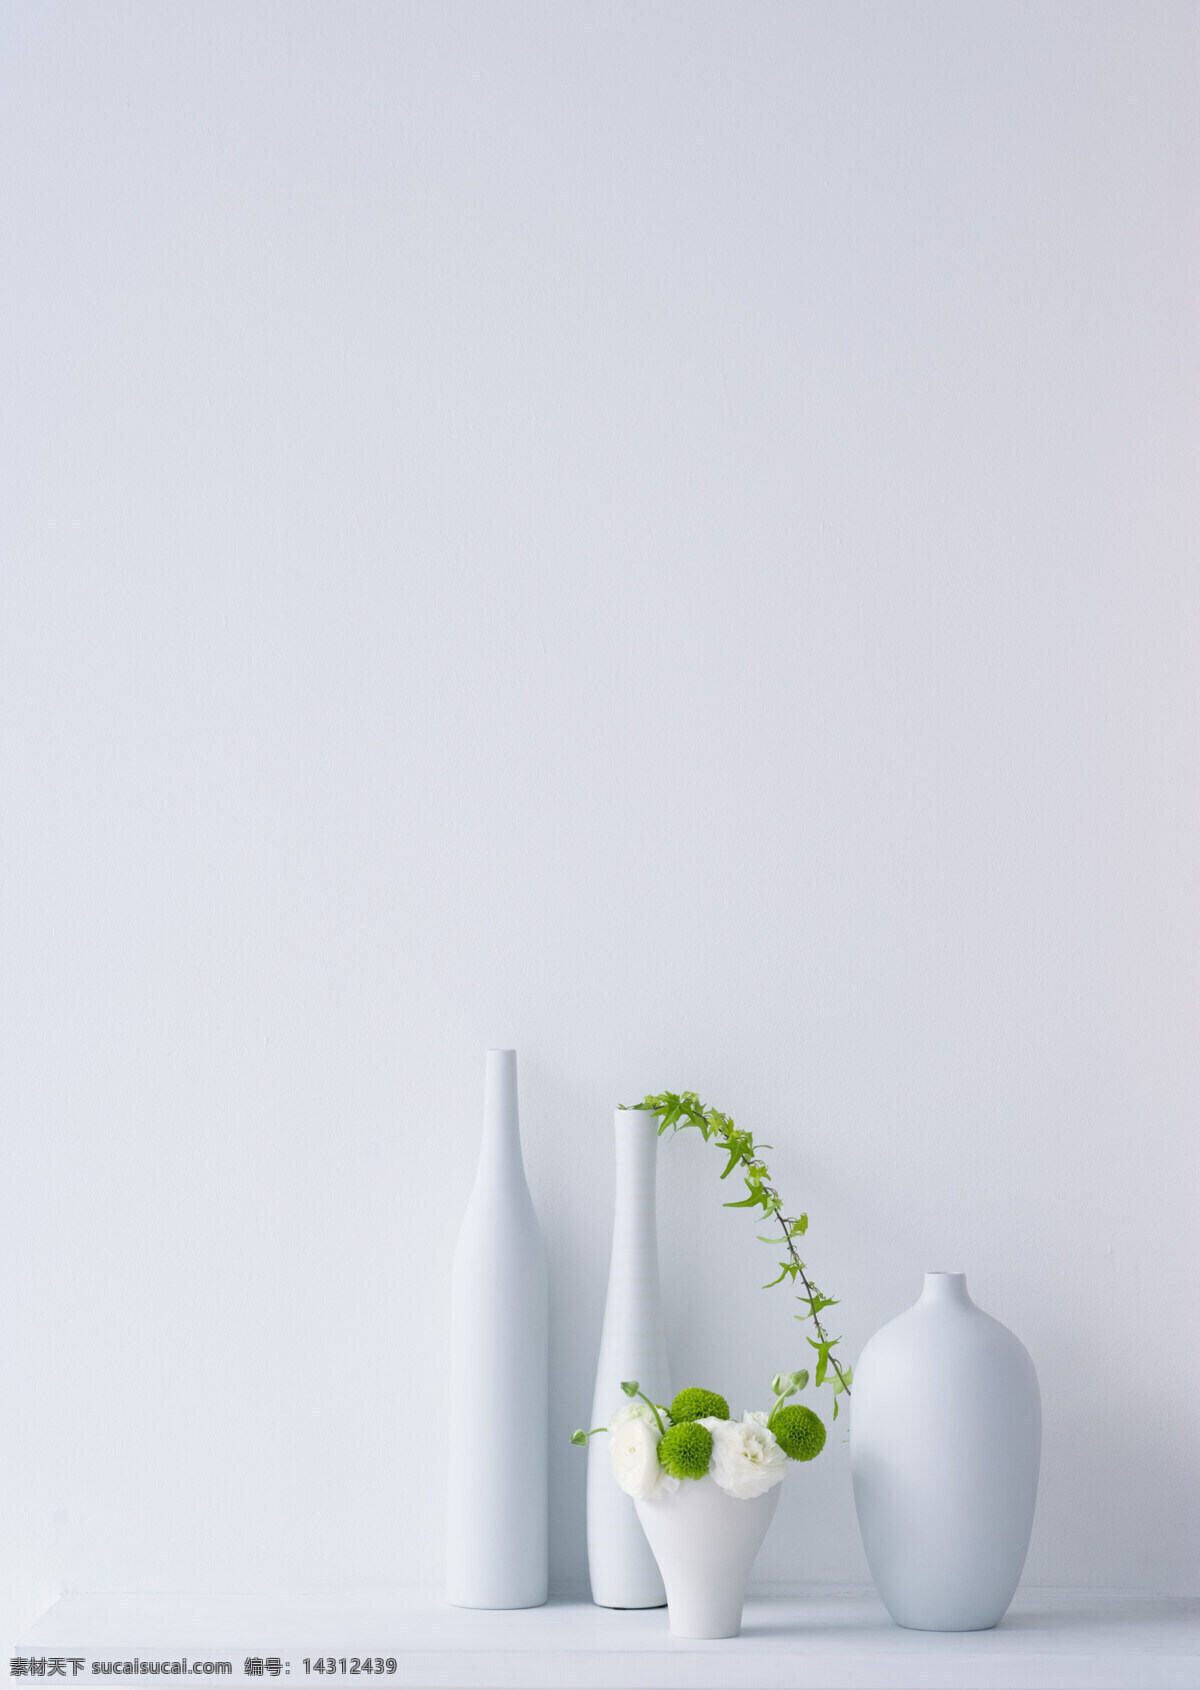 居家植物摄影 室内 植物 绿萝 花瓶 白色 椅子 搁物板 浅色 光影 圆瓶 光线 室内绿植 花草 生物世界